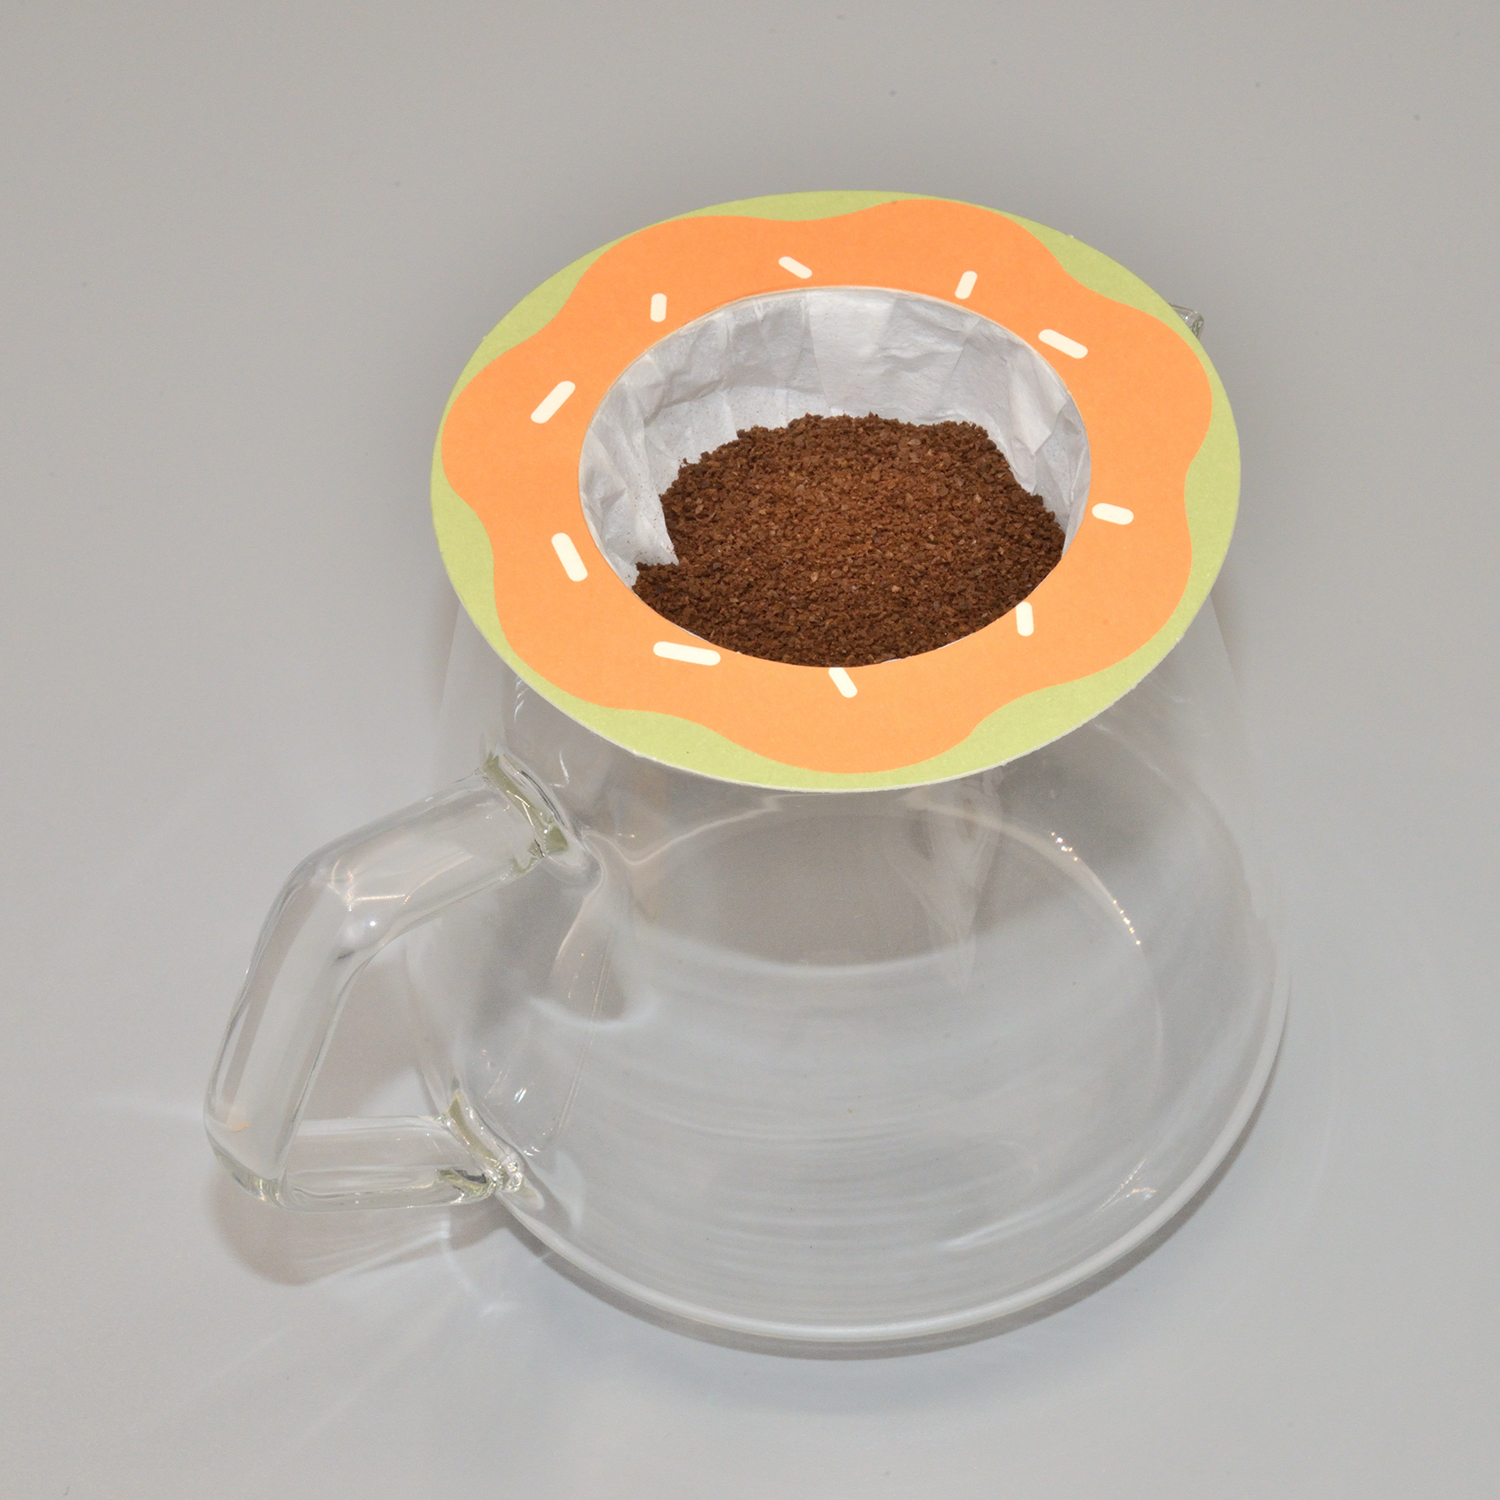 Ufo Fedora Drip Coffee пакети акысыз дизайн менен камсыз кылат